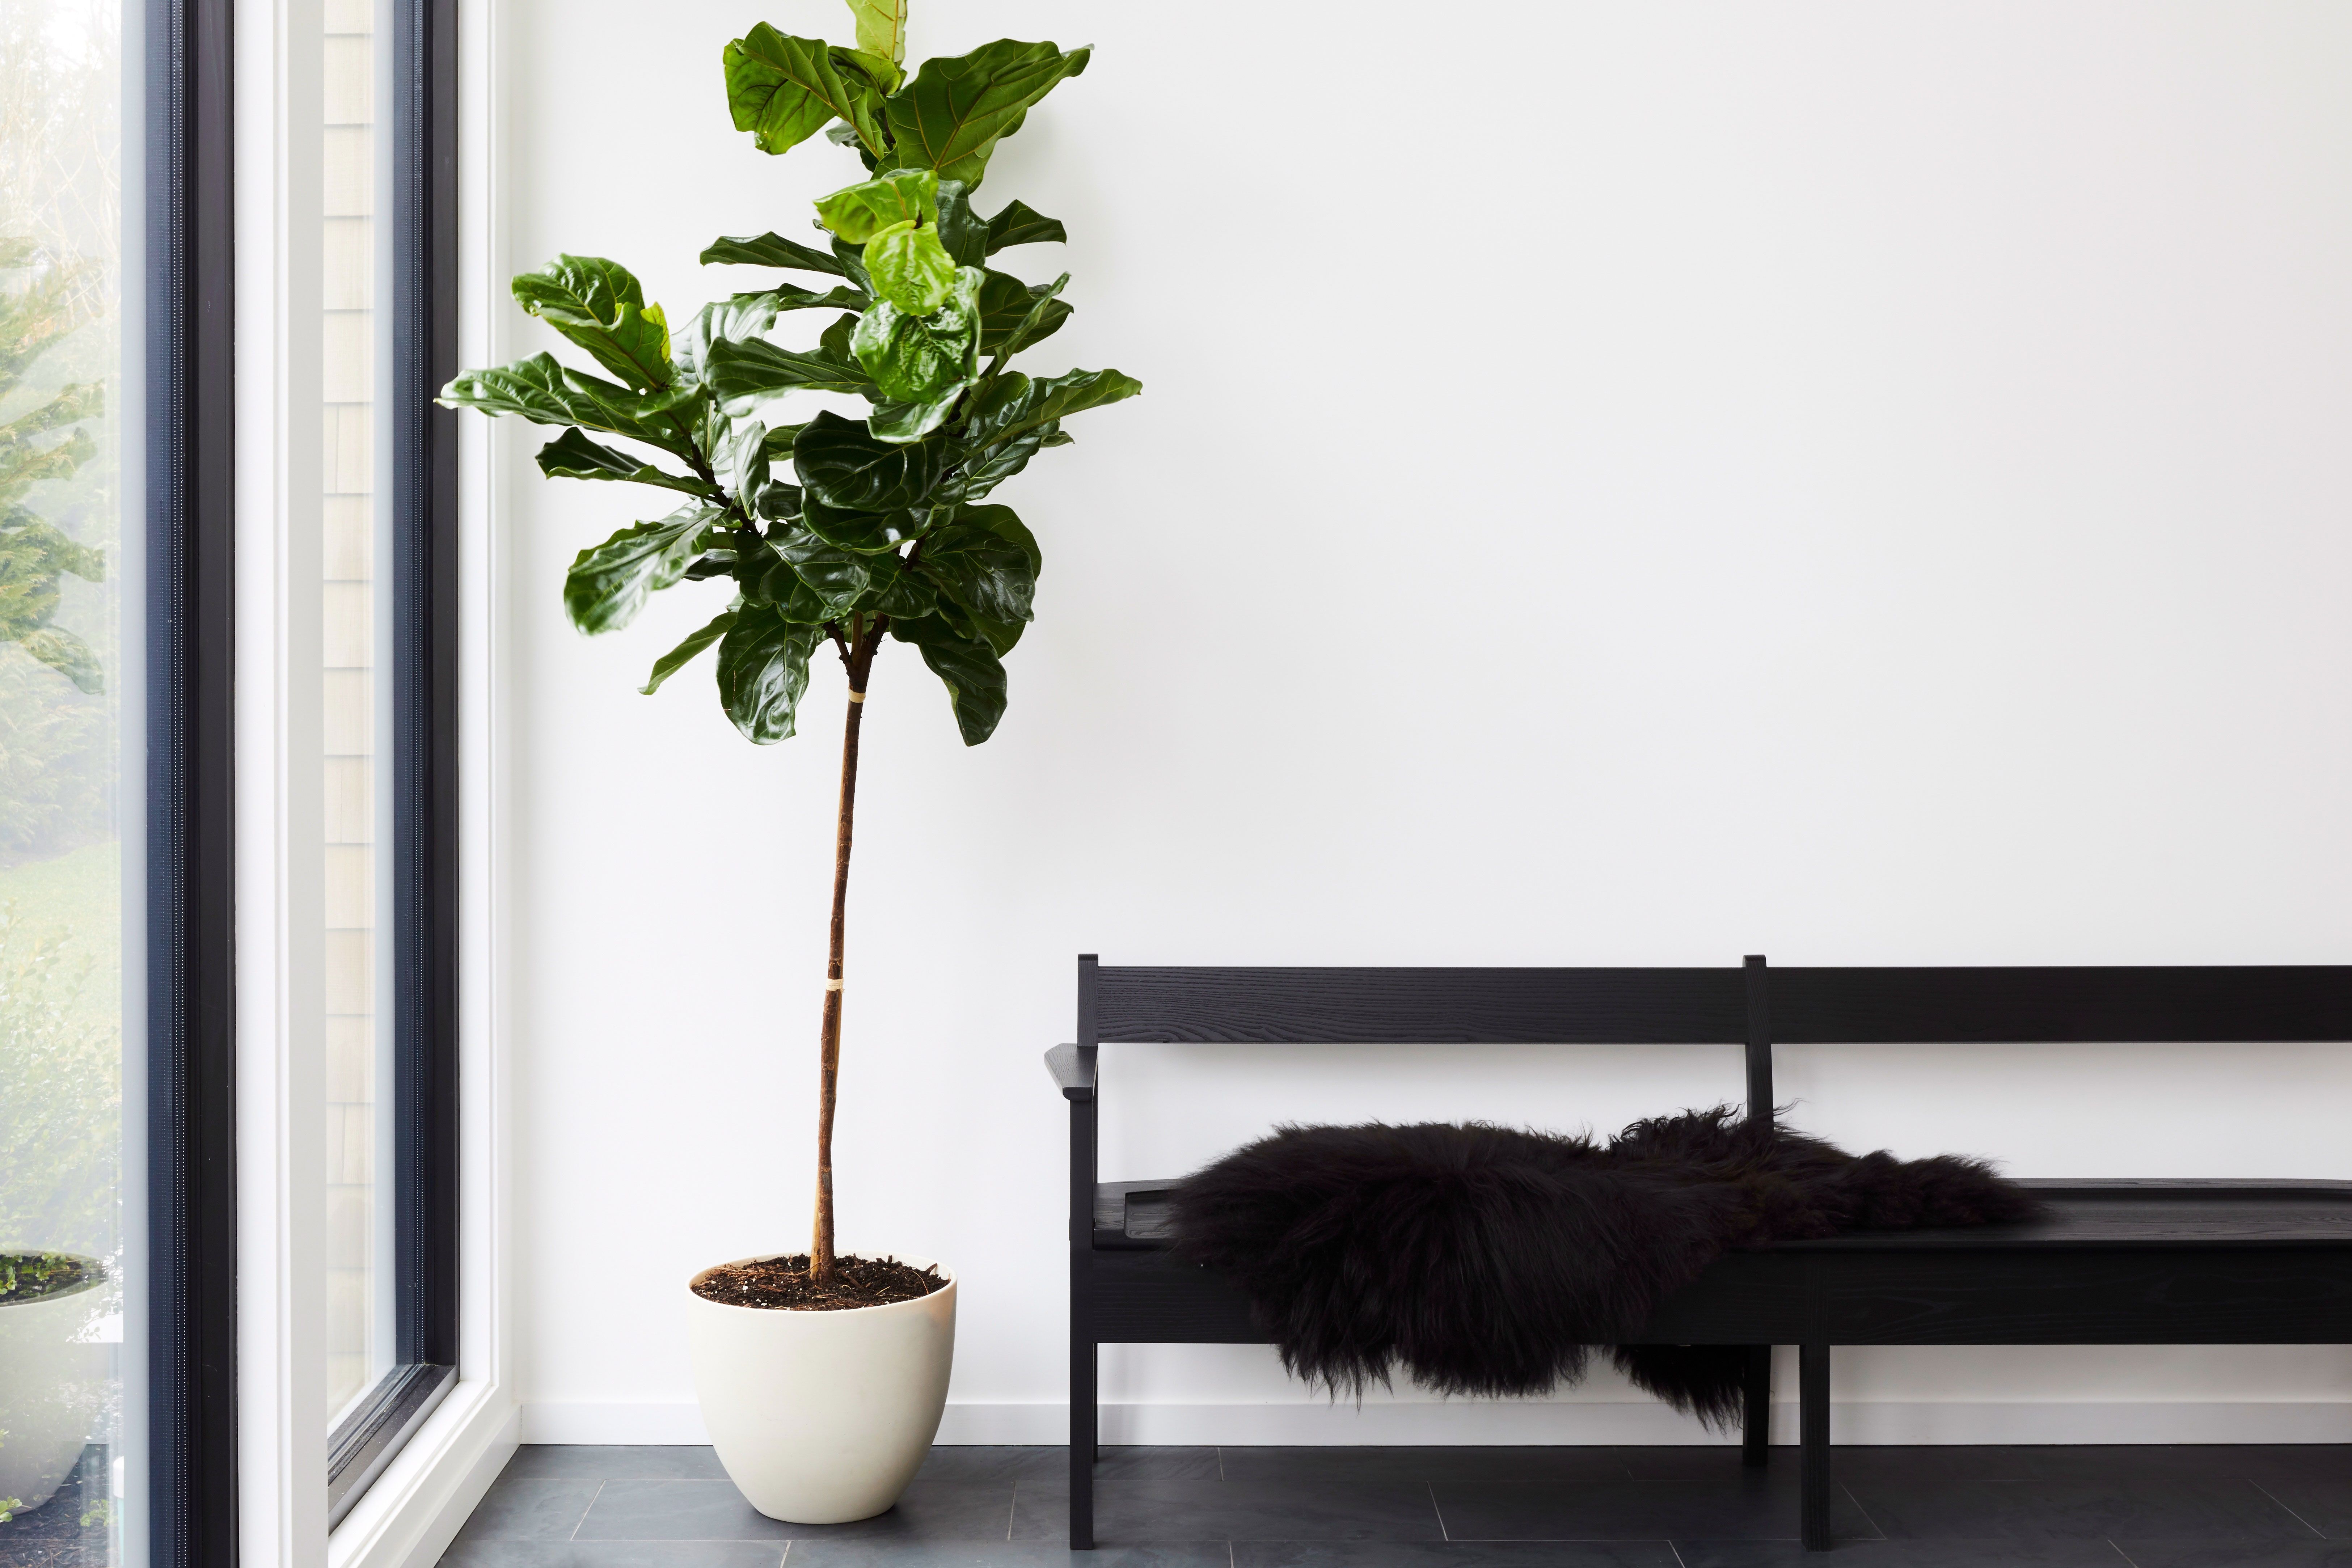 عکس دکور با گیاهان آپارتمانی